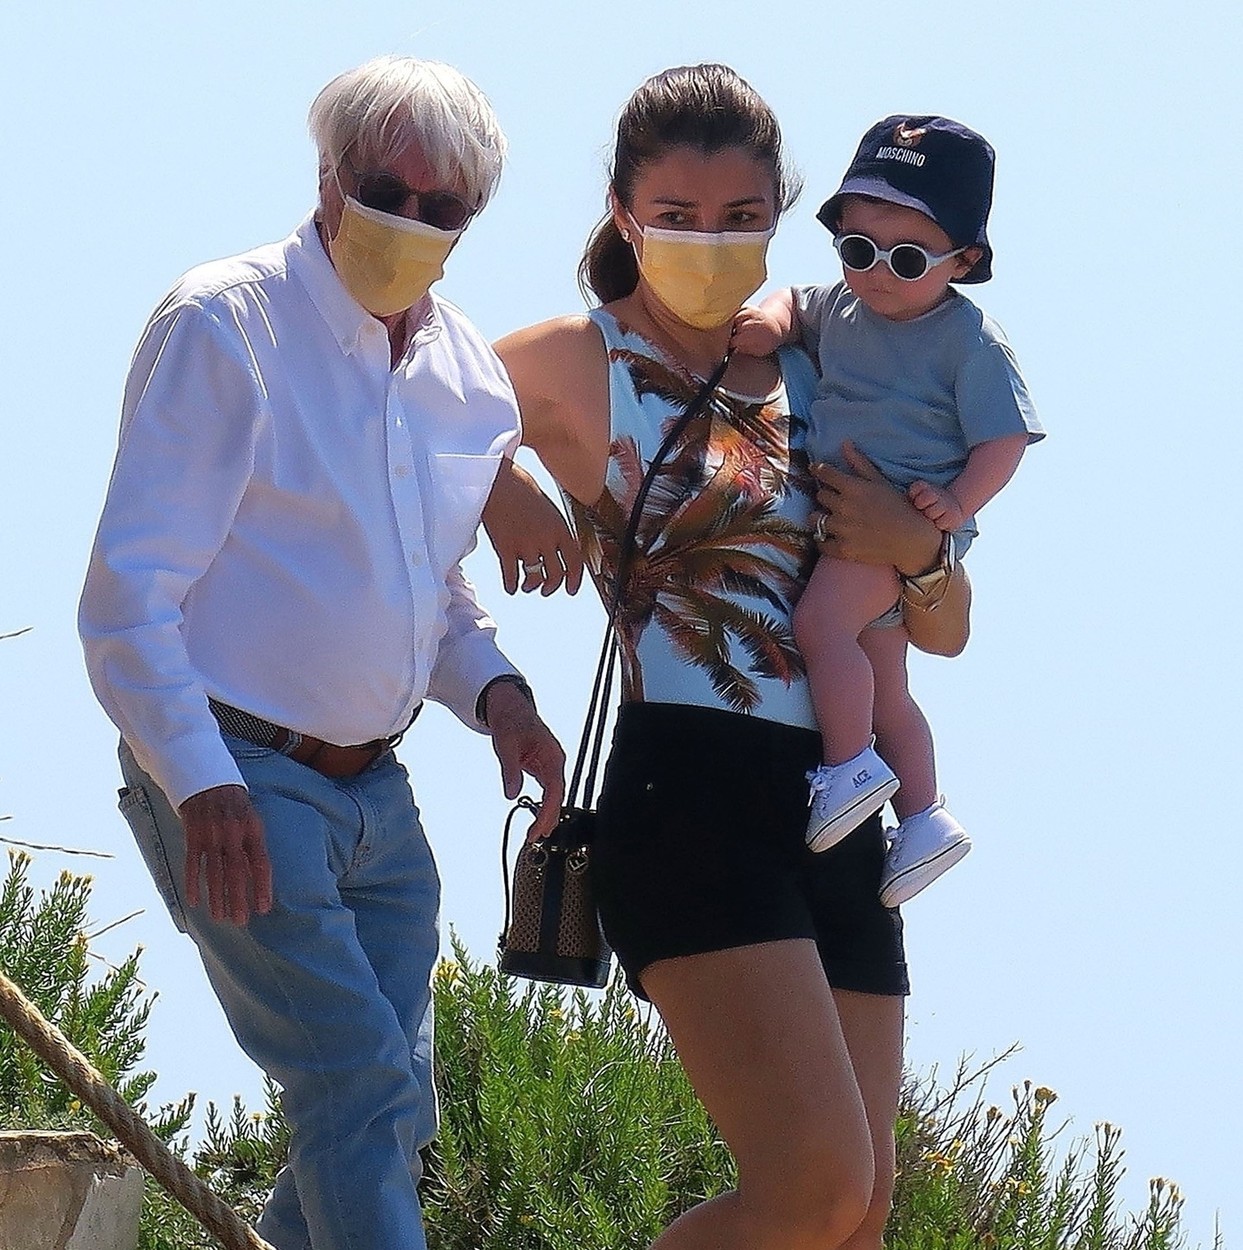 Bernie Ecclestone, alături de soţie şi copil